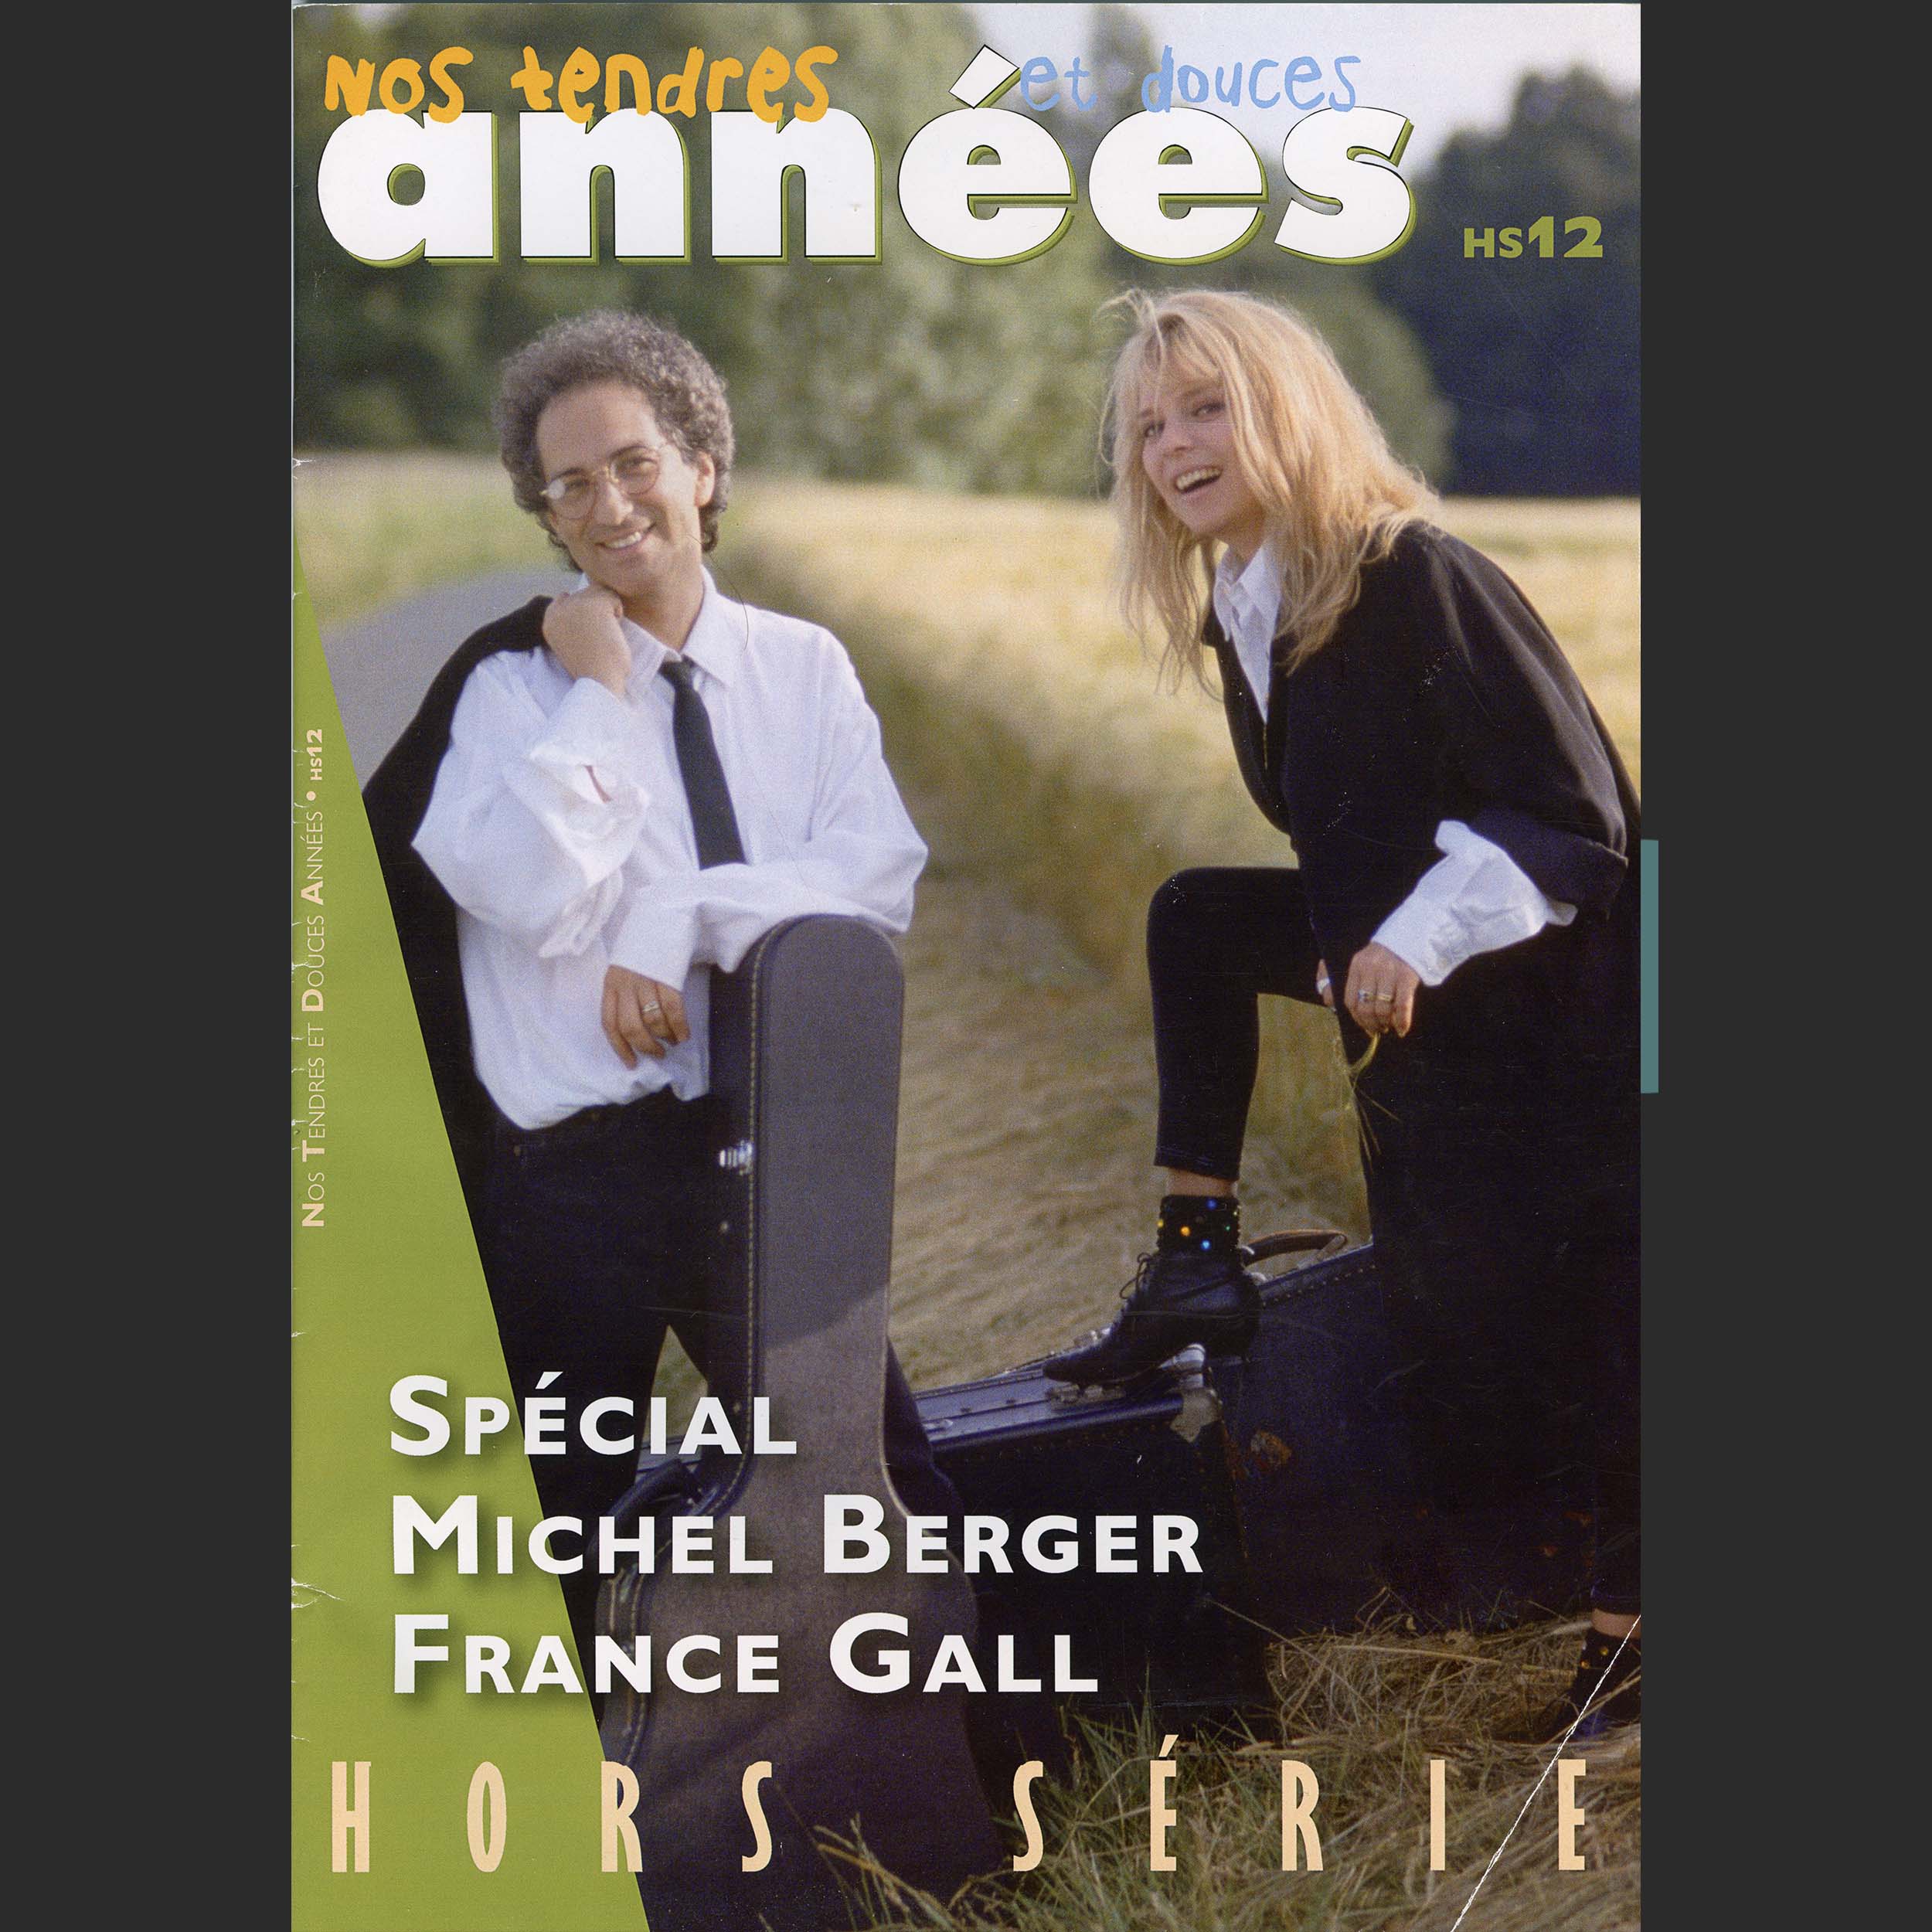 Les plus belles chansons de Michel Berger - L'Avenir